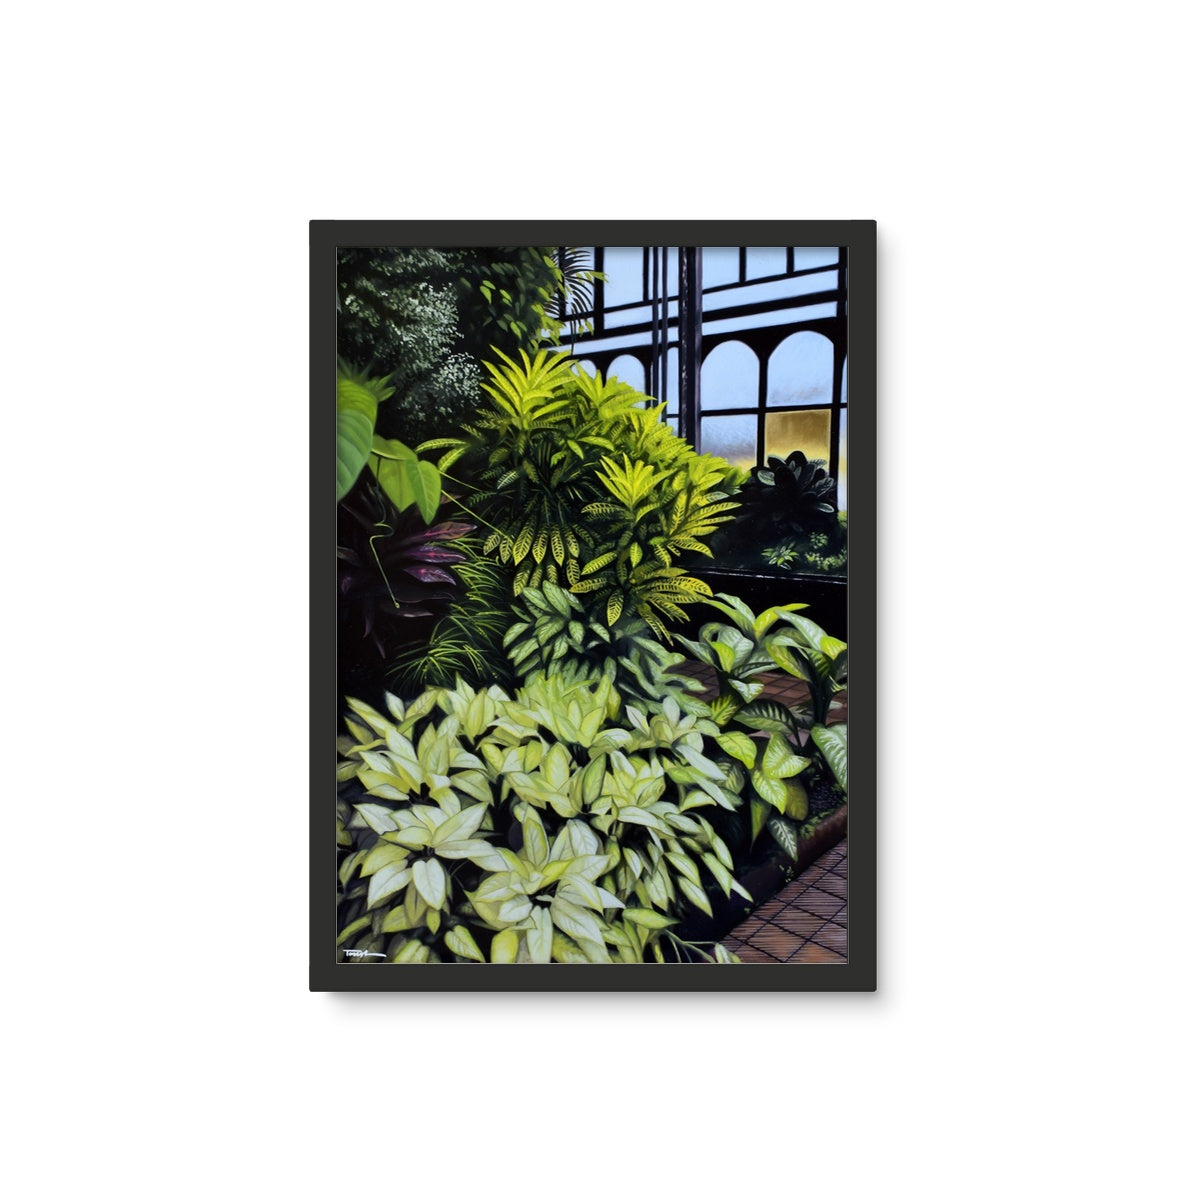 Glasgow Botanic Gardens - Framed Wall Art Tile